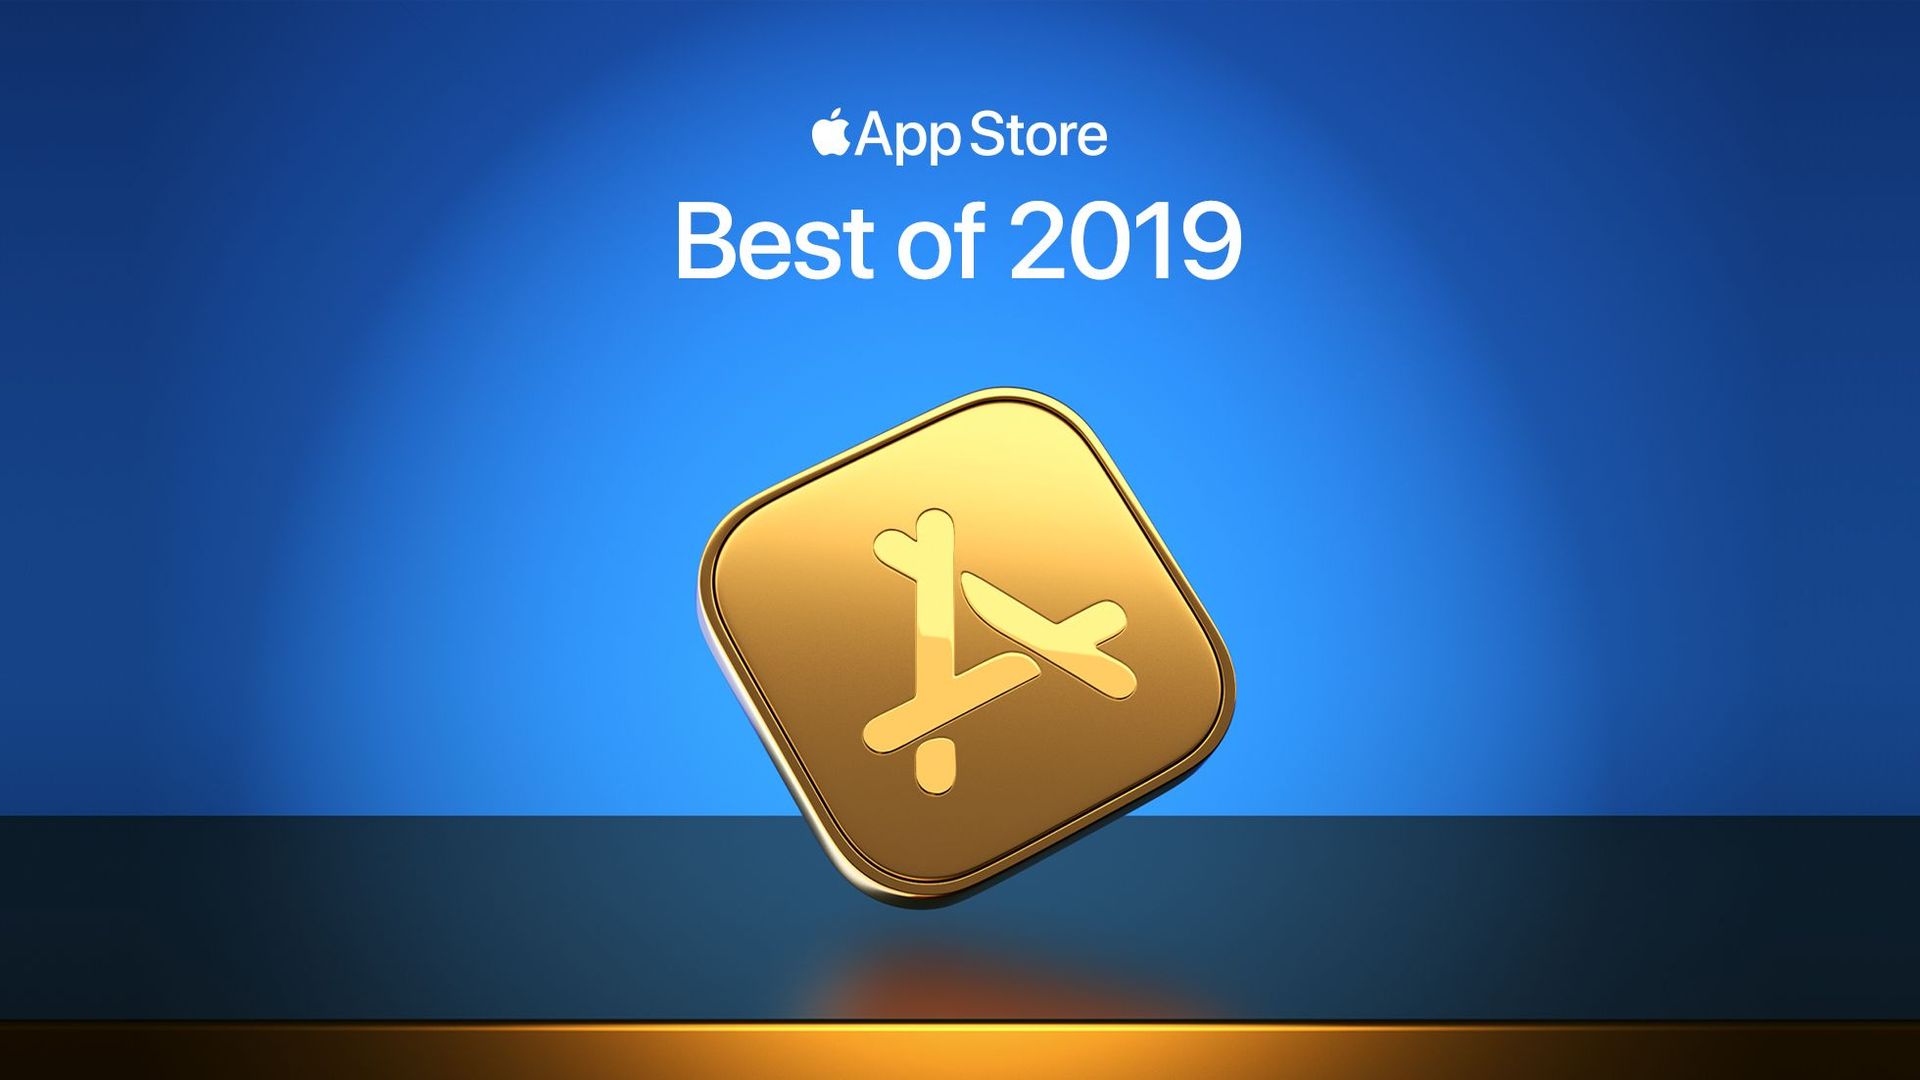 Voici les meilleures applications de l'année selon Apple